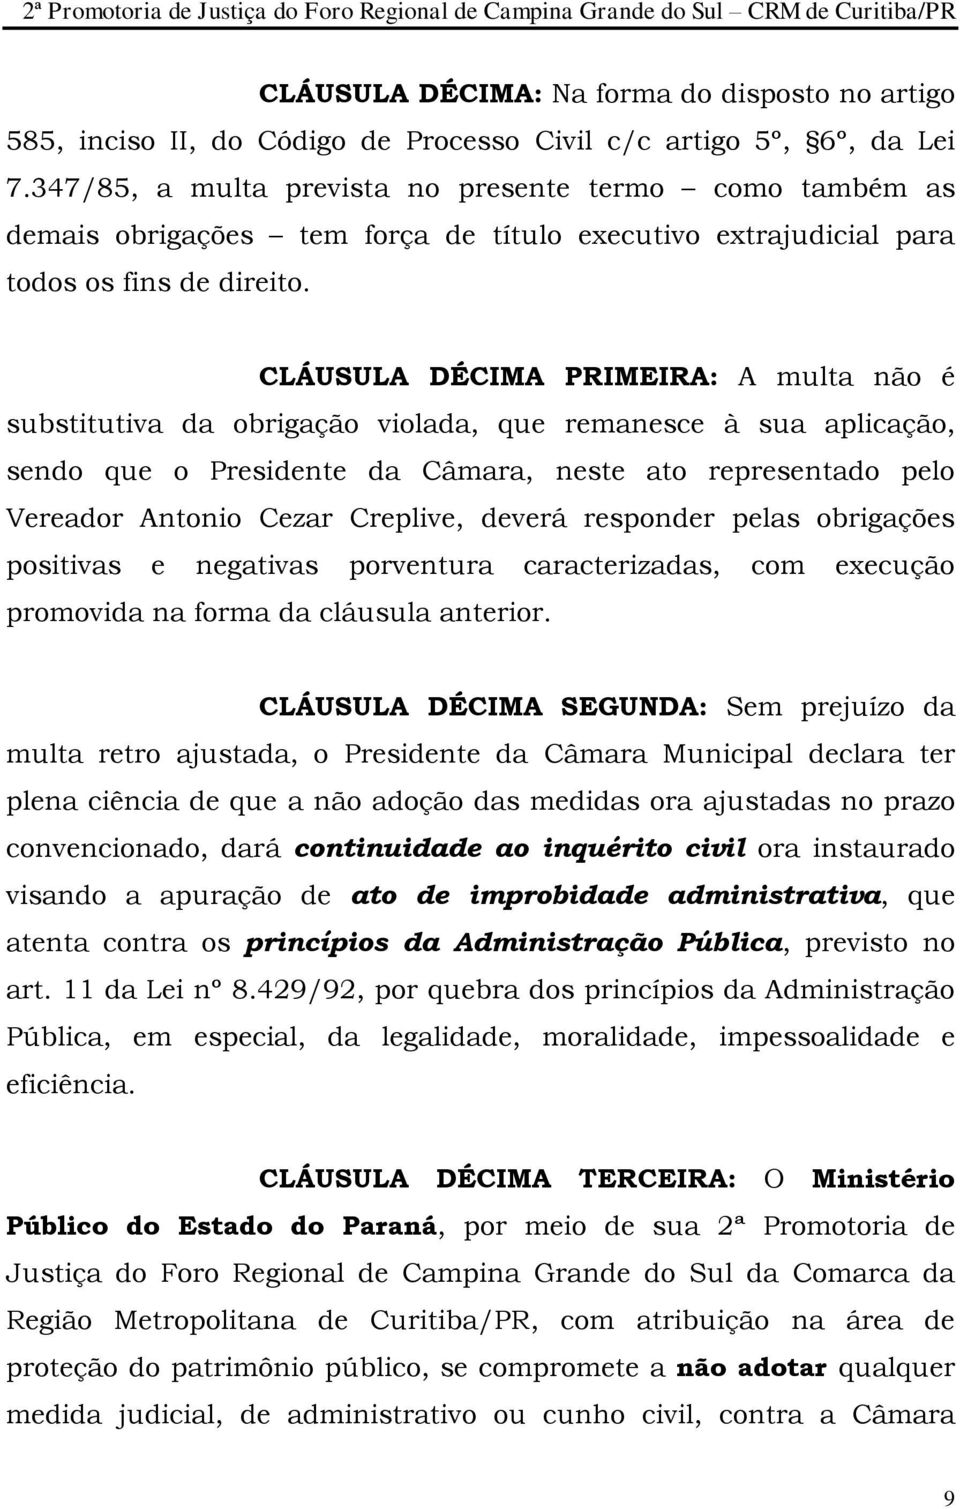 CLÁUSULA DÉCIMA PRIMEIRA: A multa não é substitutiva da obrigação violada, que remanesce à sua aplicação, sendo que o Presidente da Câmara, neste ato representado pelo Vereador Antonio Cezar